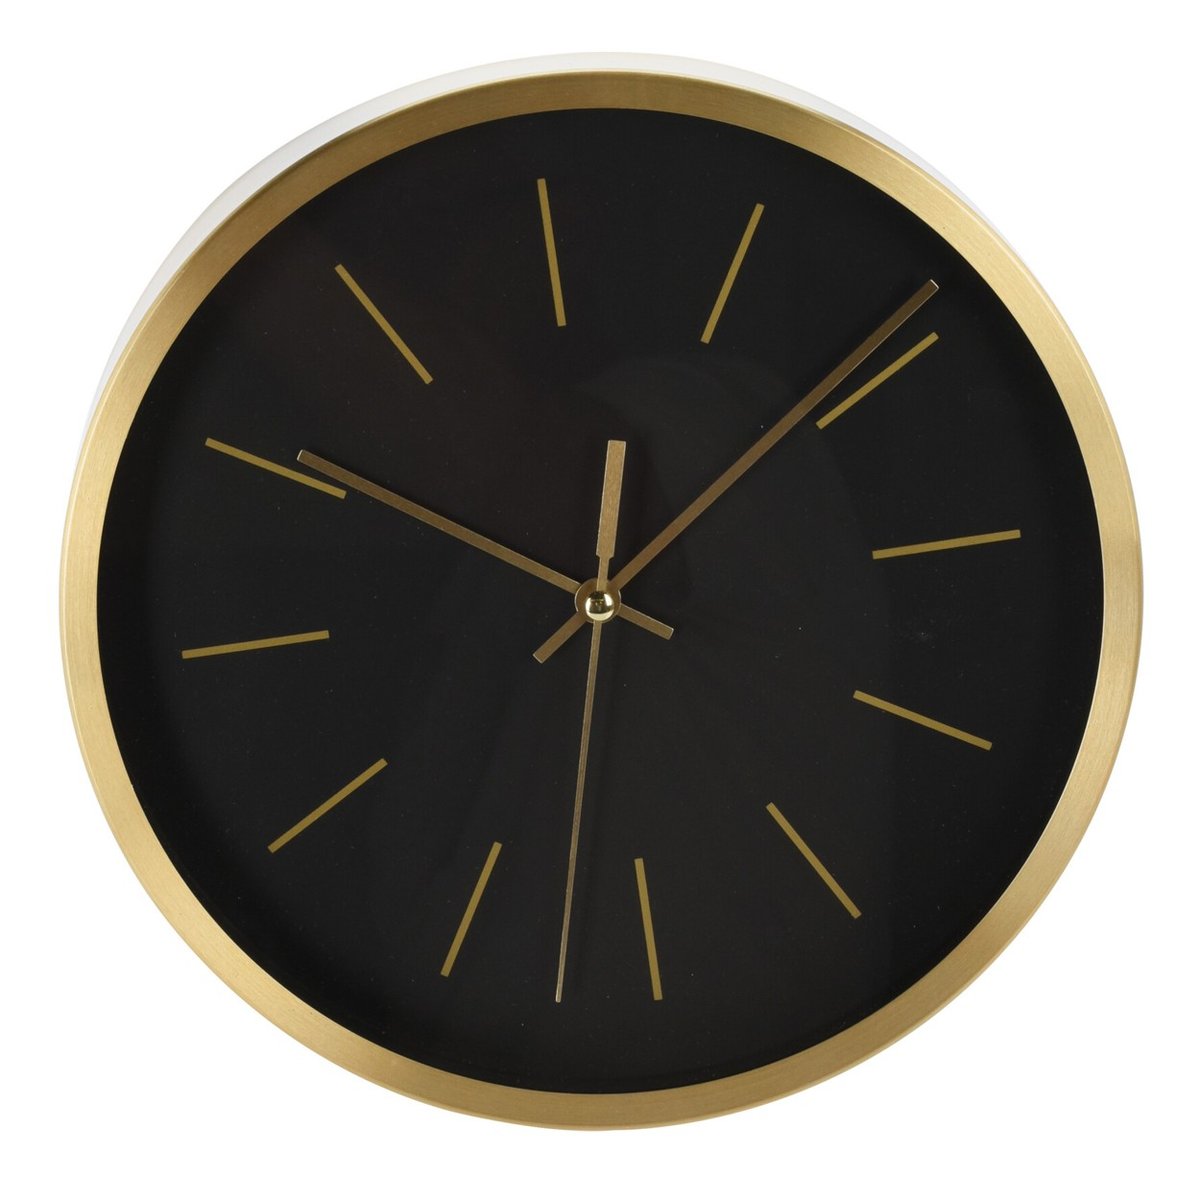 Zegar ścienny okrągły czarno złoty 25 cm